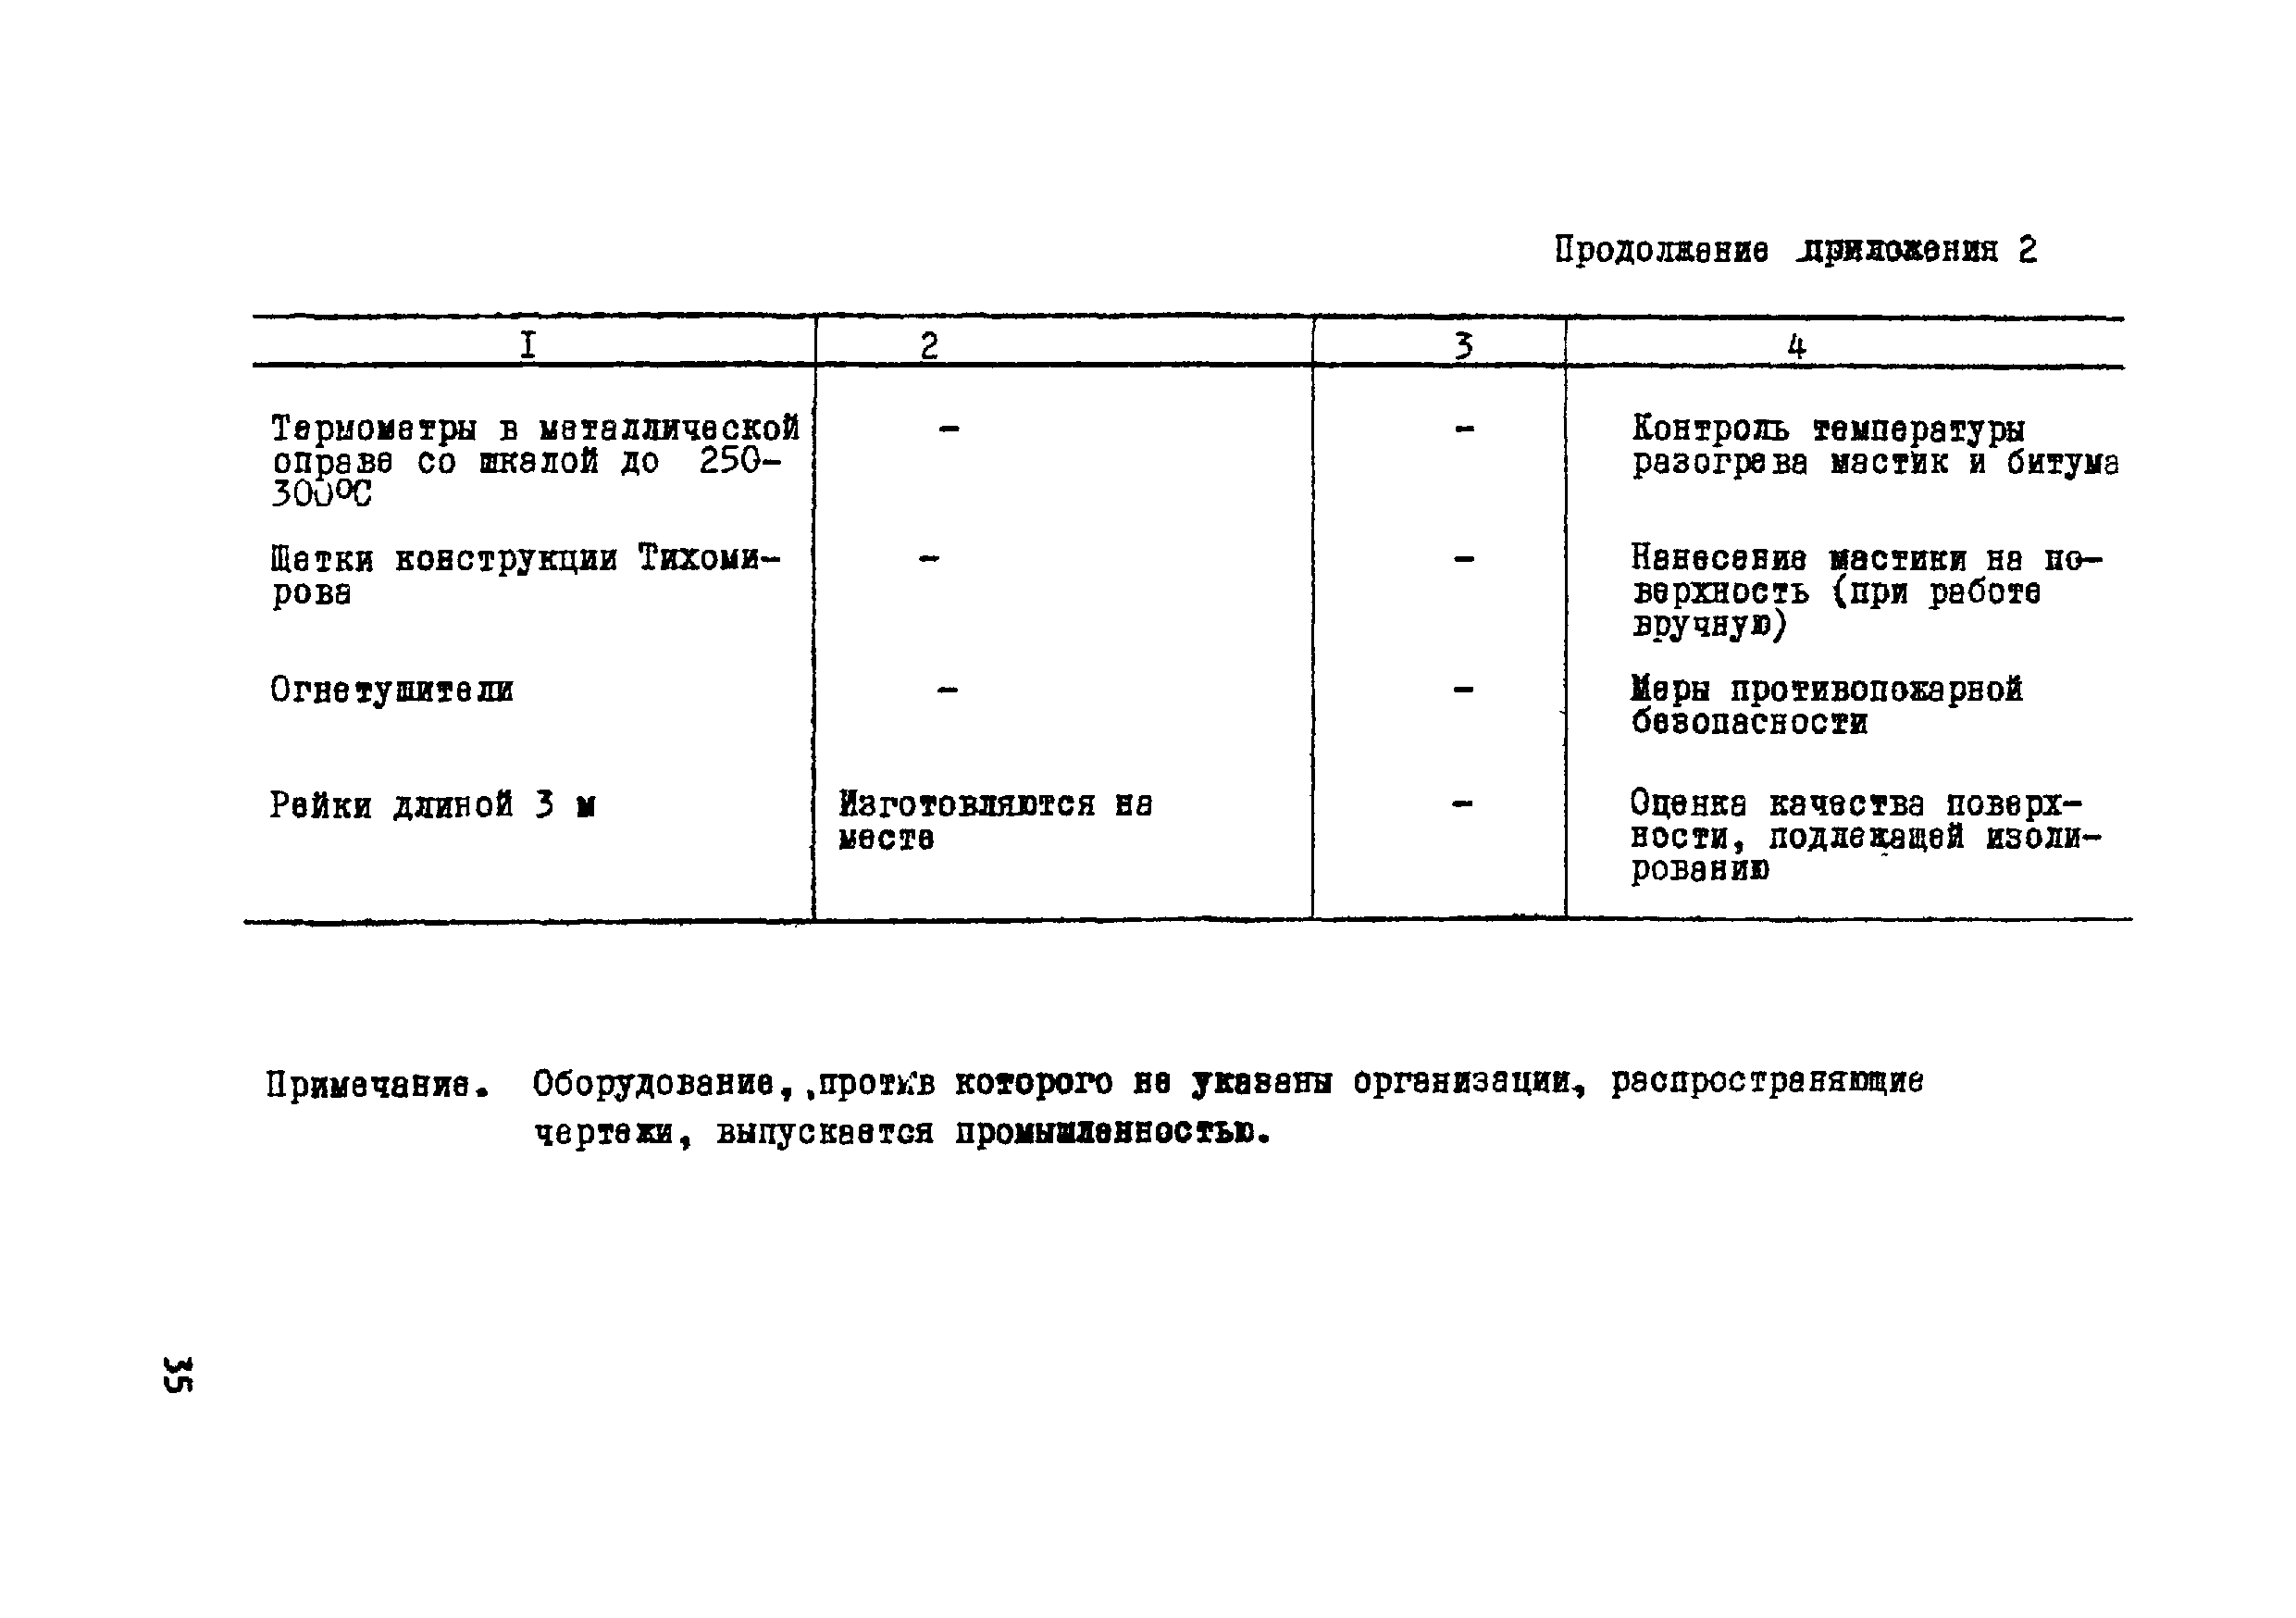 ВСН 19-76/МО СССР